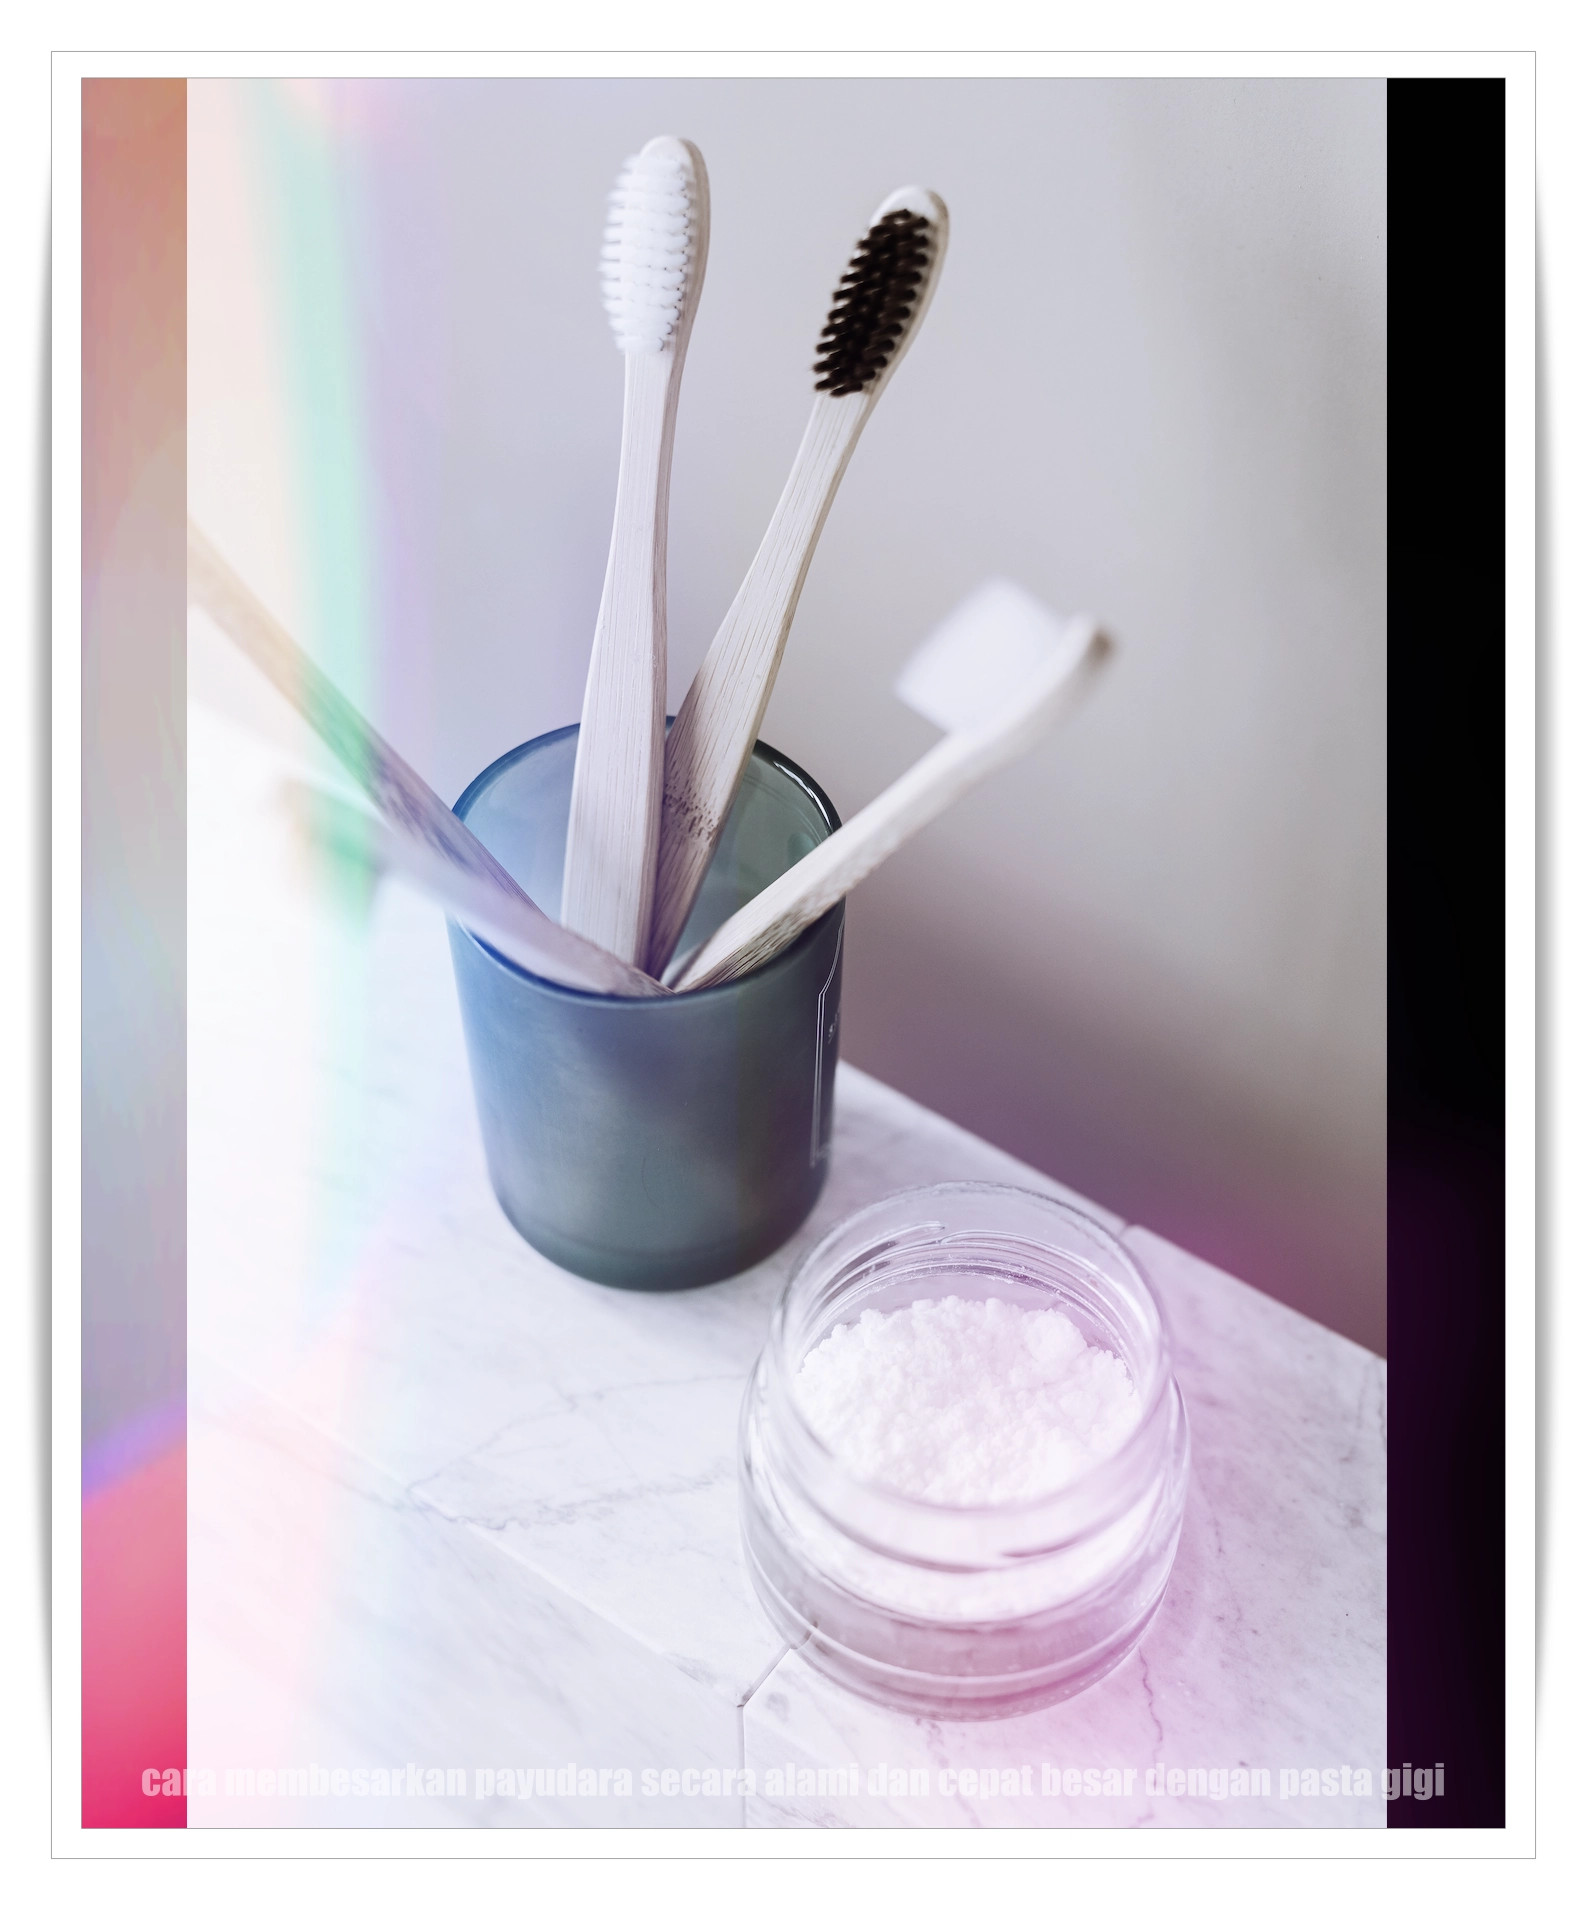 cara membesarkan payudara secara alami dan cepat besar dengan pasta gigi image